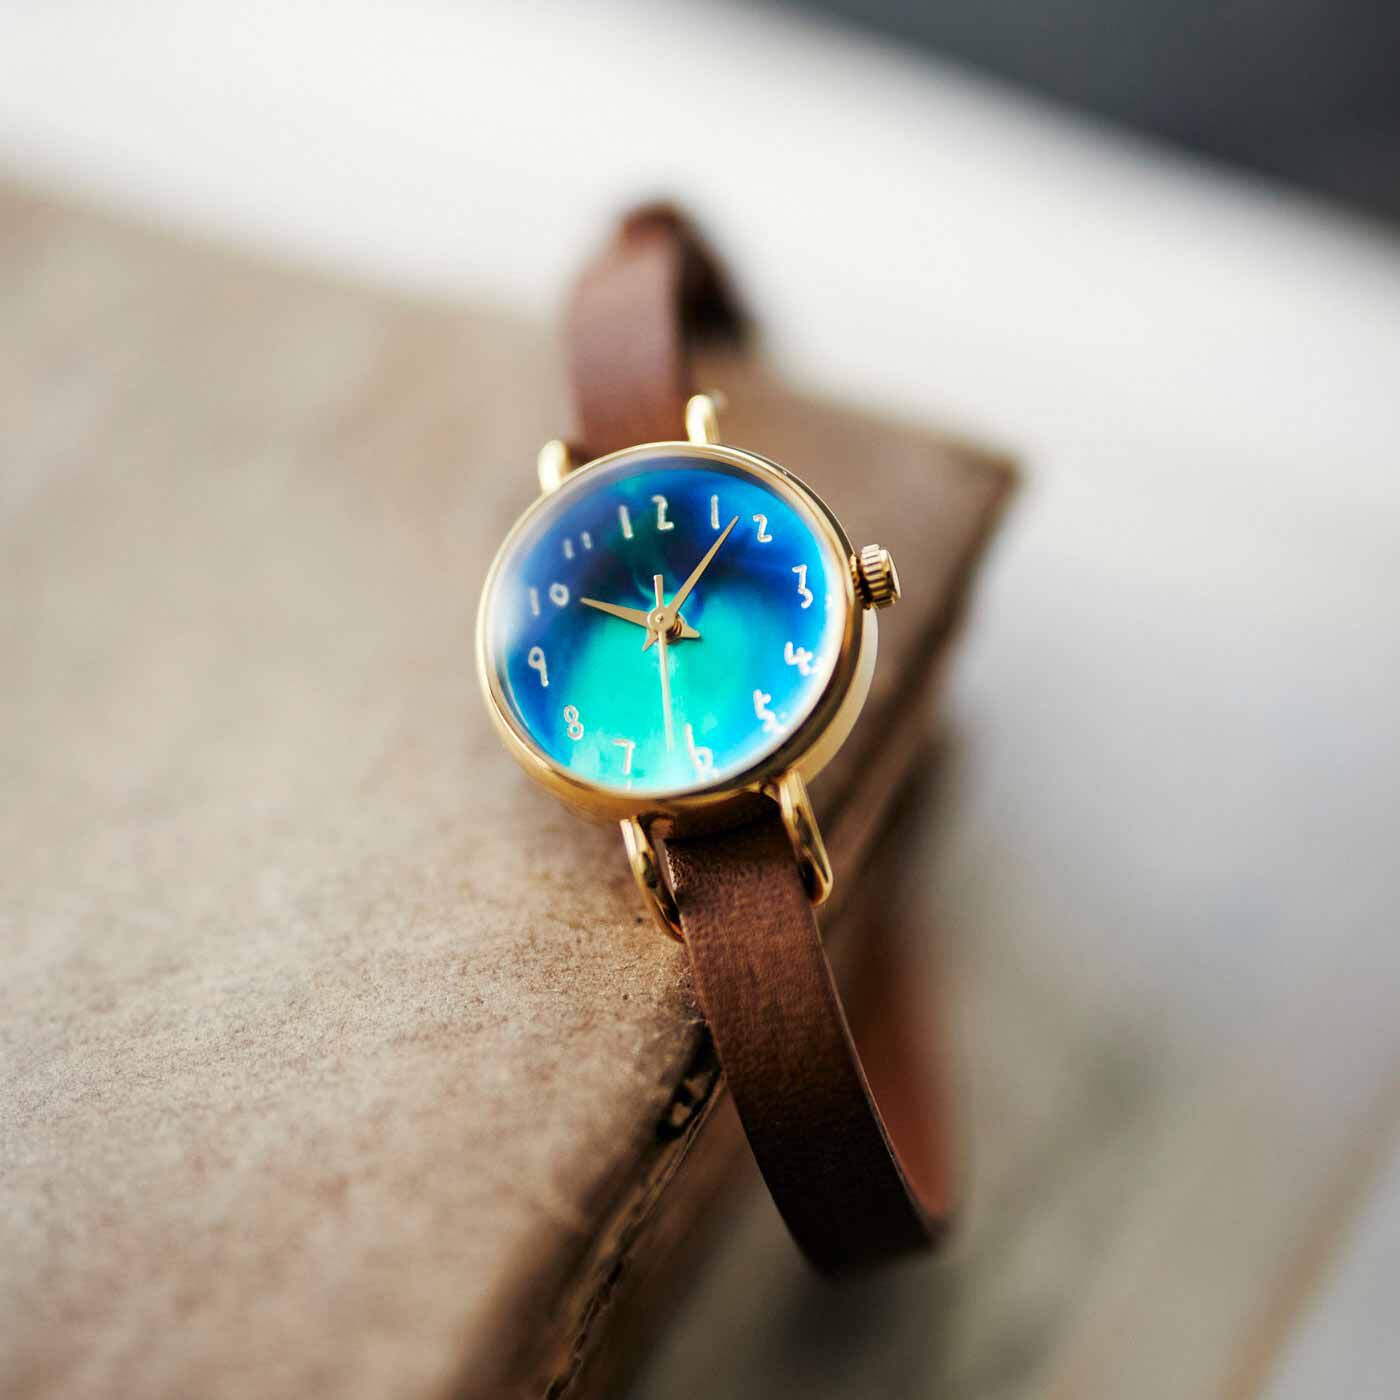 金沢の時計職人が手掛けた 美しいオーロラに見惚れる腕時計〈ブラウン